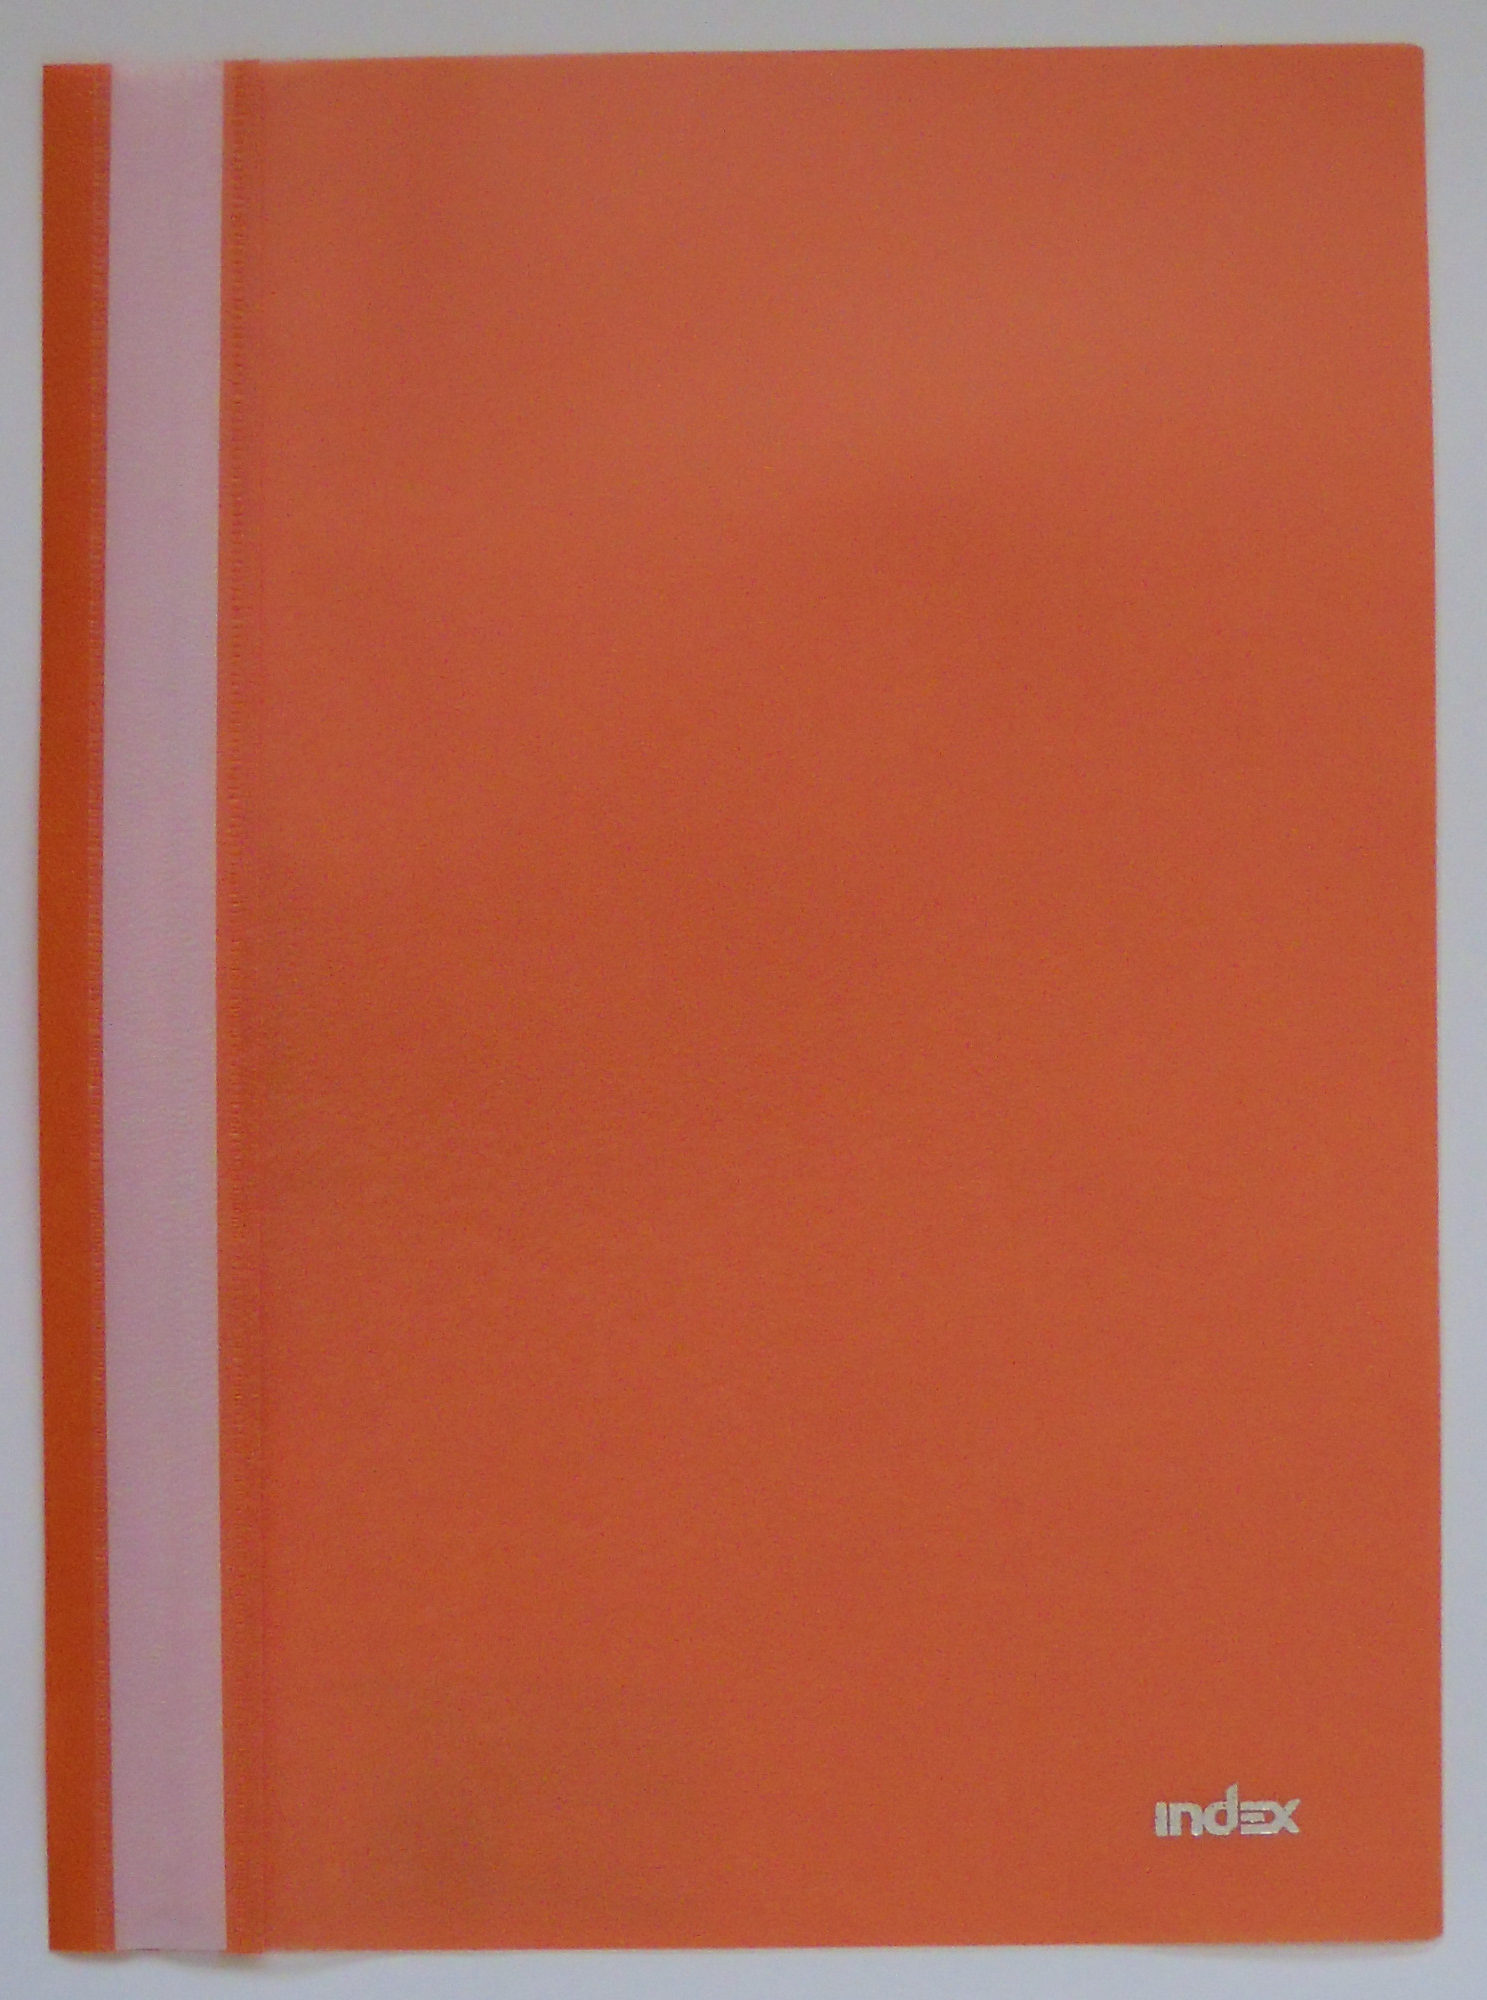 Папка-скоросшиватель, оранжевая, ф. А4|3 - Product - ru